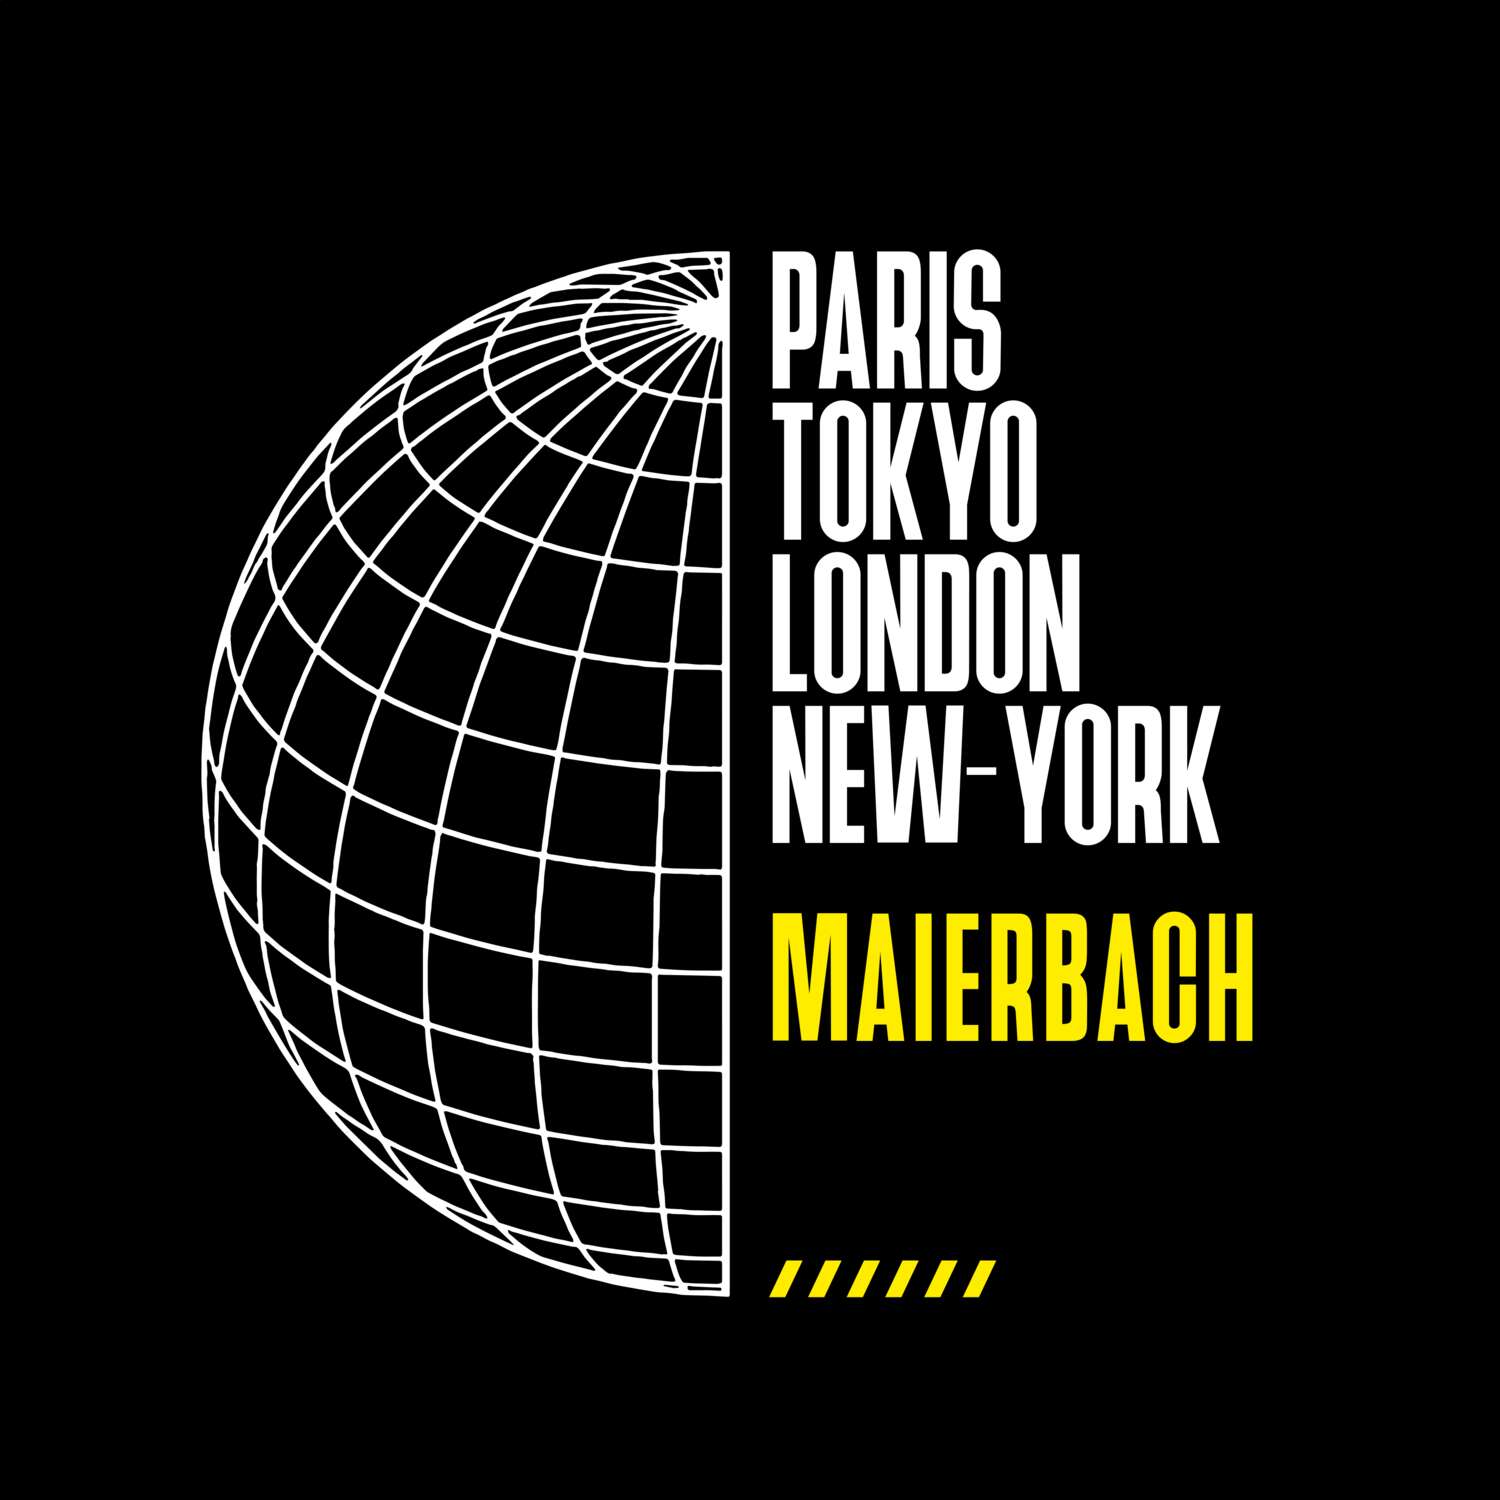 Maierbach T-Shirt »Paris Tokyo London«